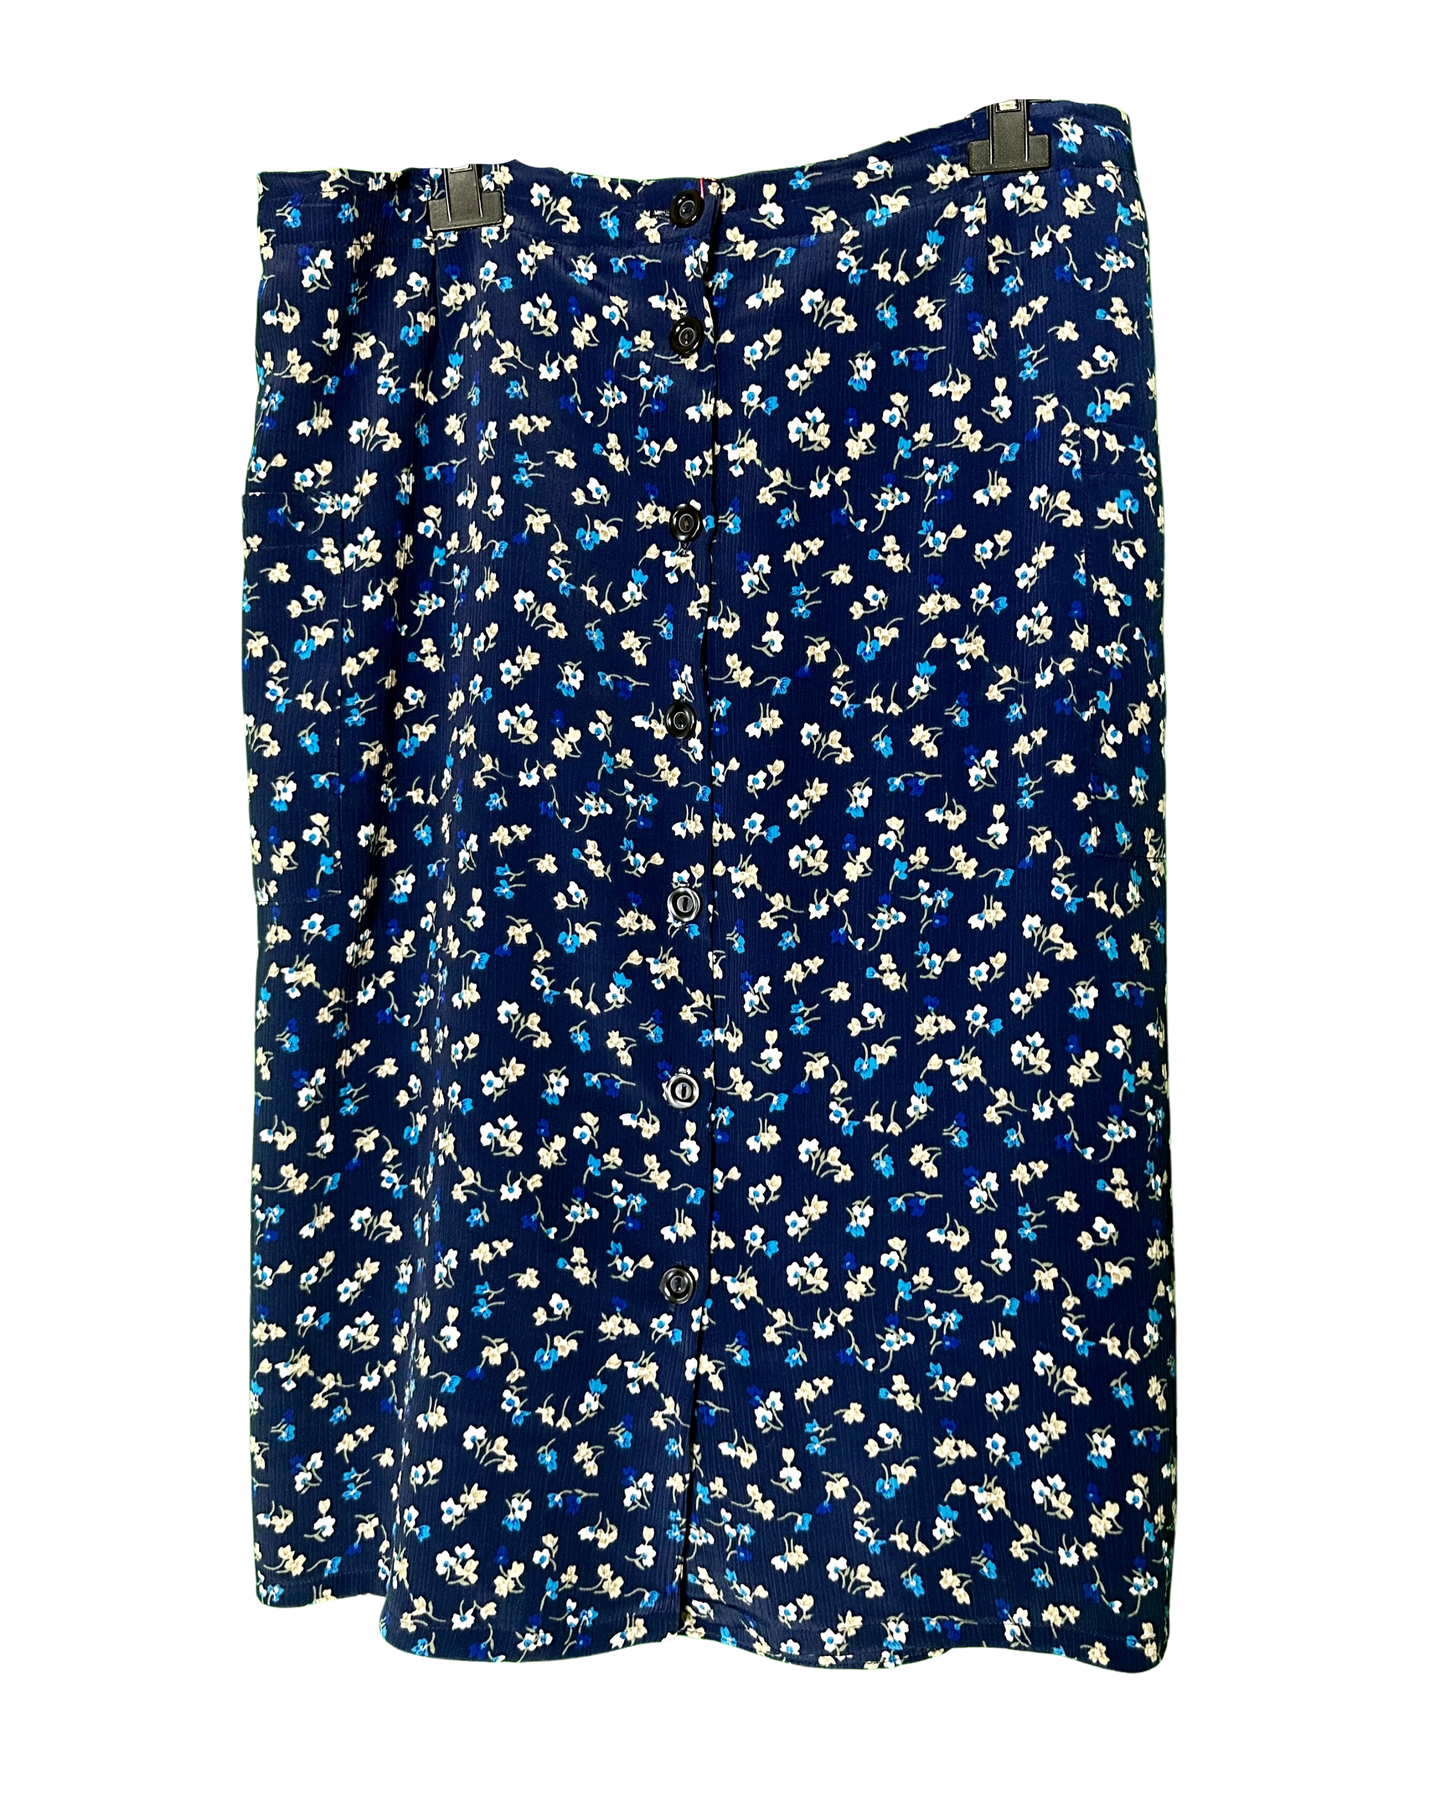 Jupe bleu marine boutonnée à fleurs | L